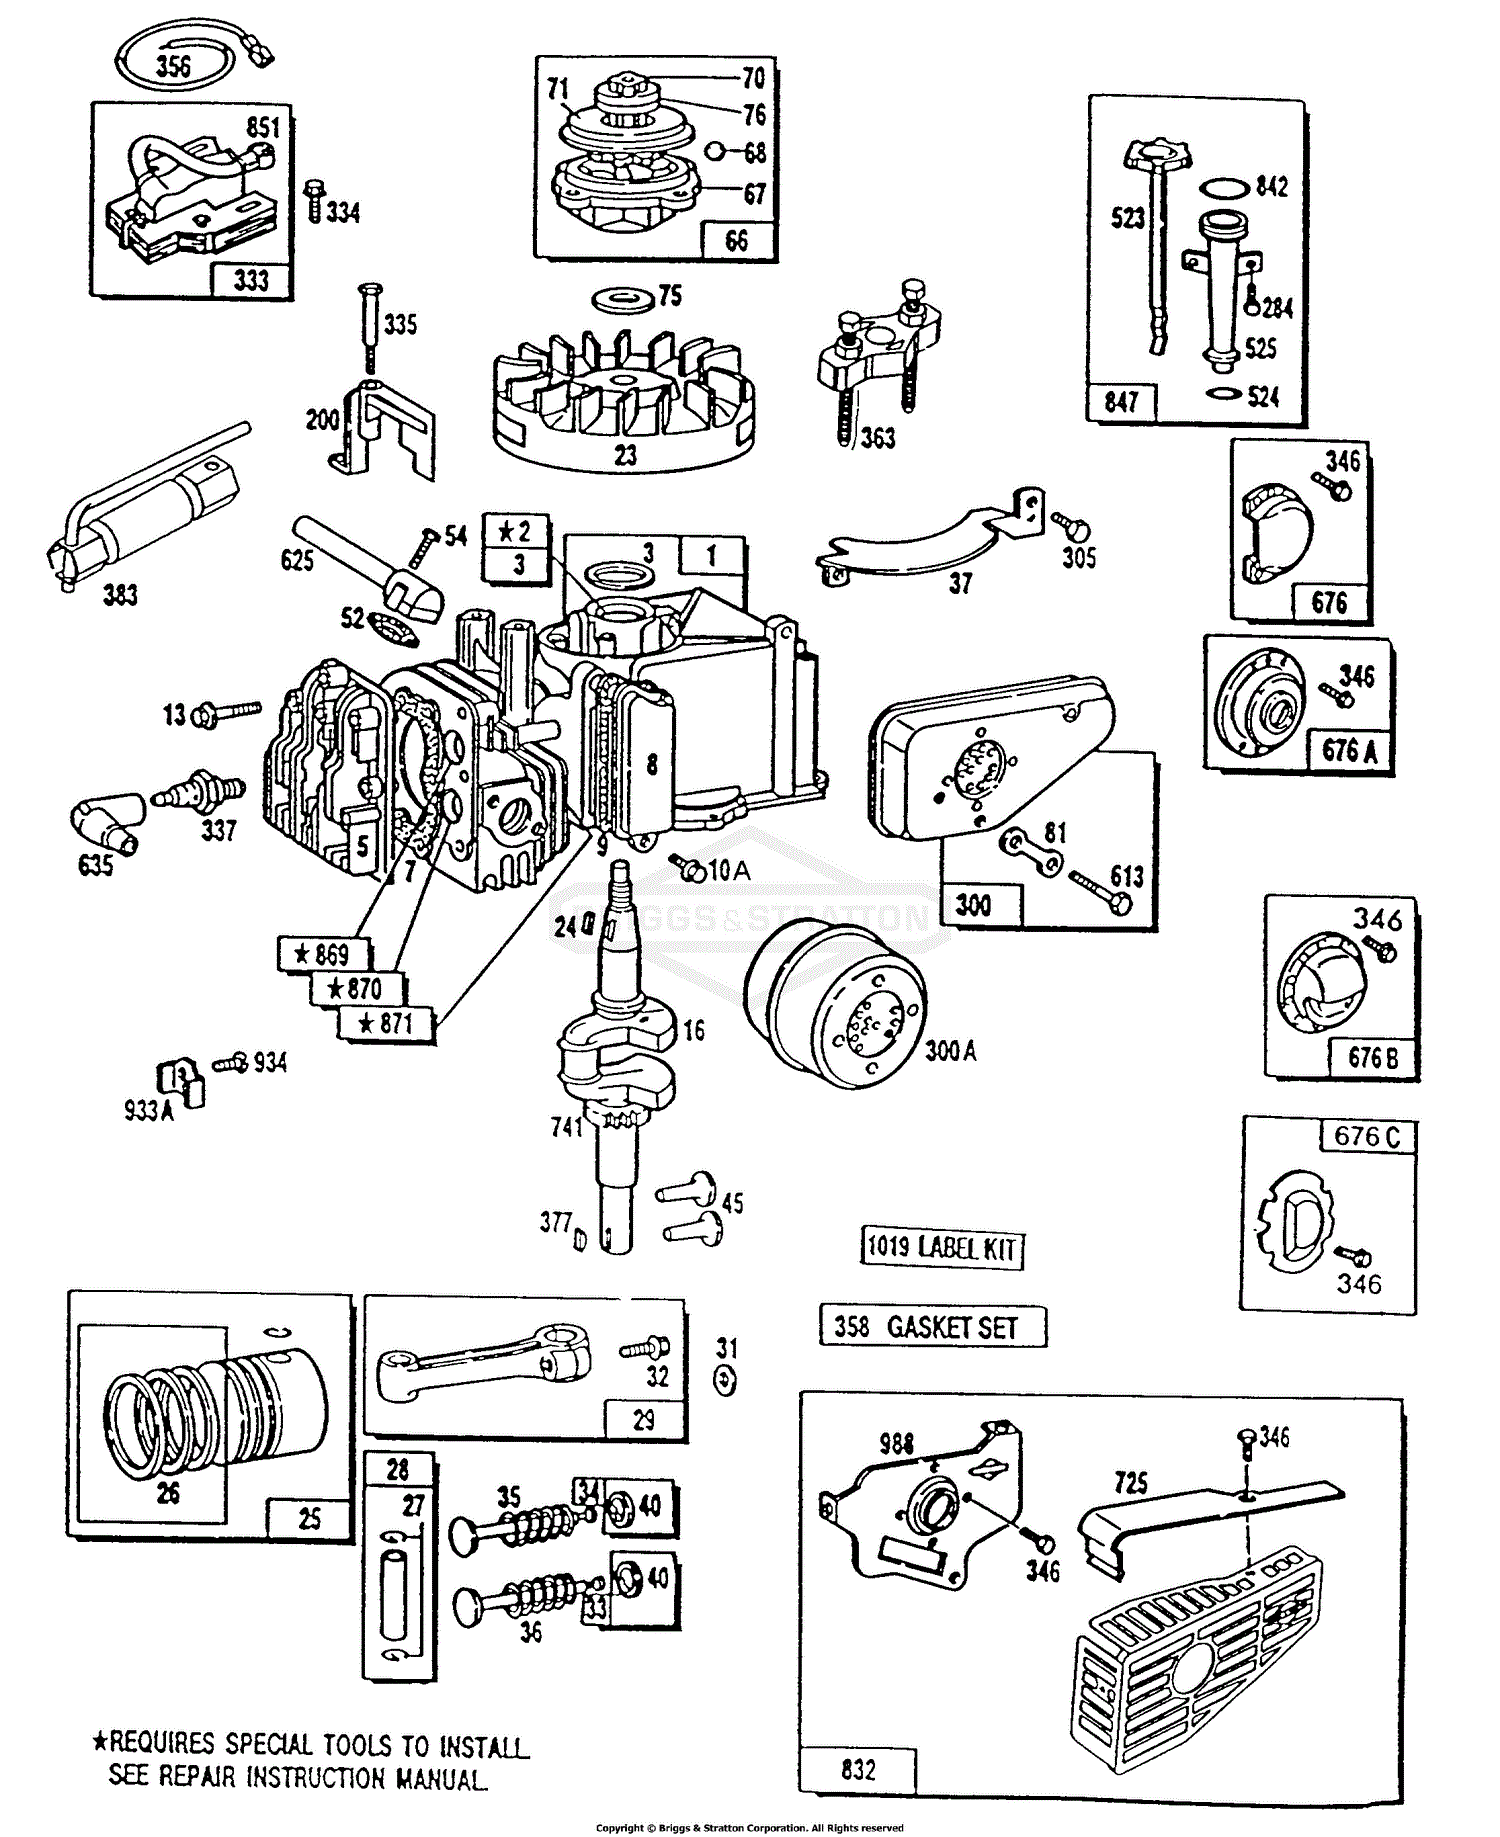 Briggs and Stratton 112212-0648-01 Parts Diagrams